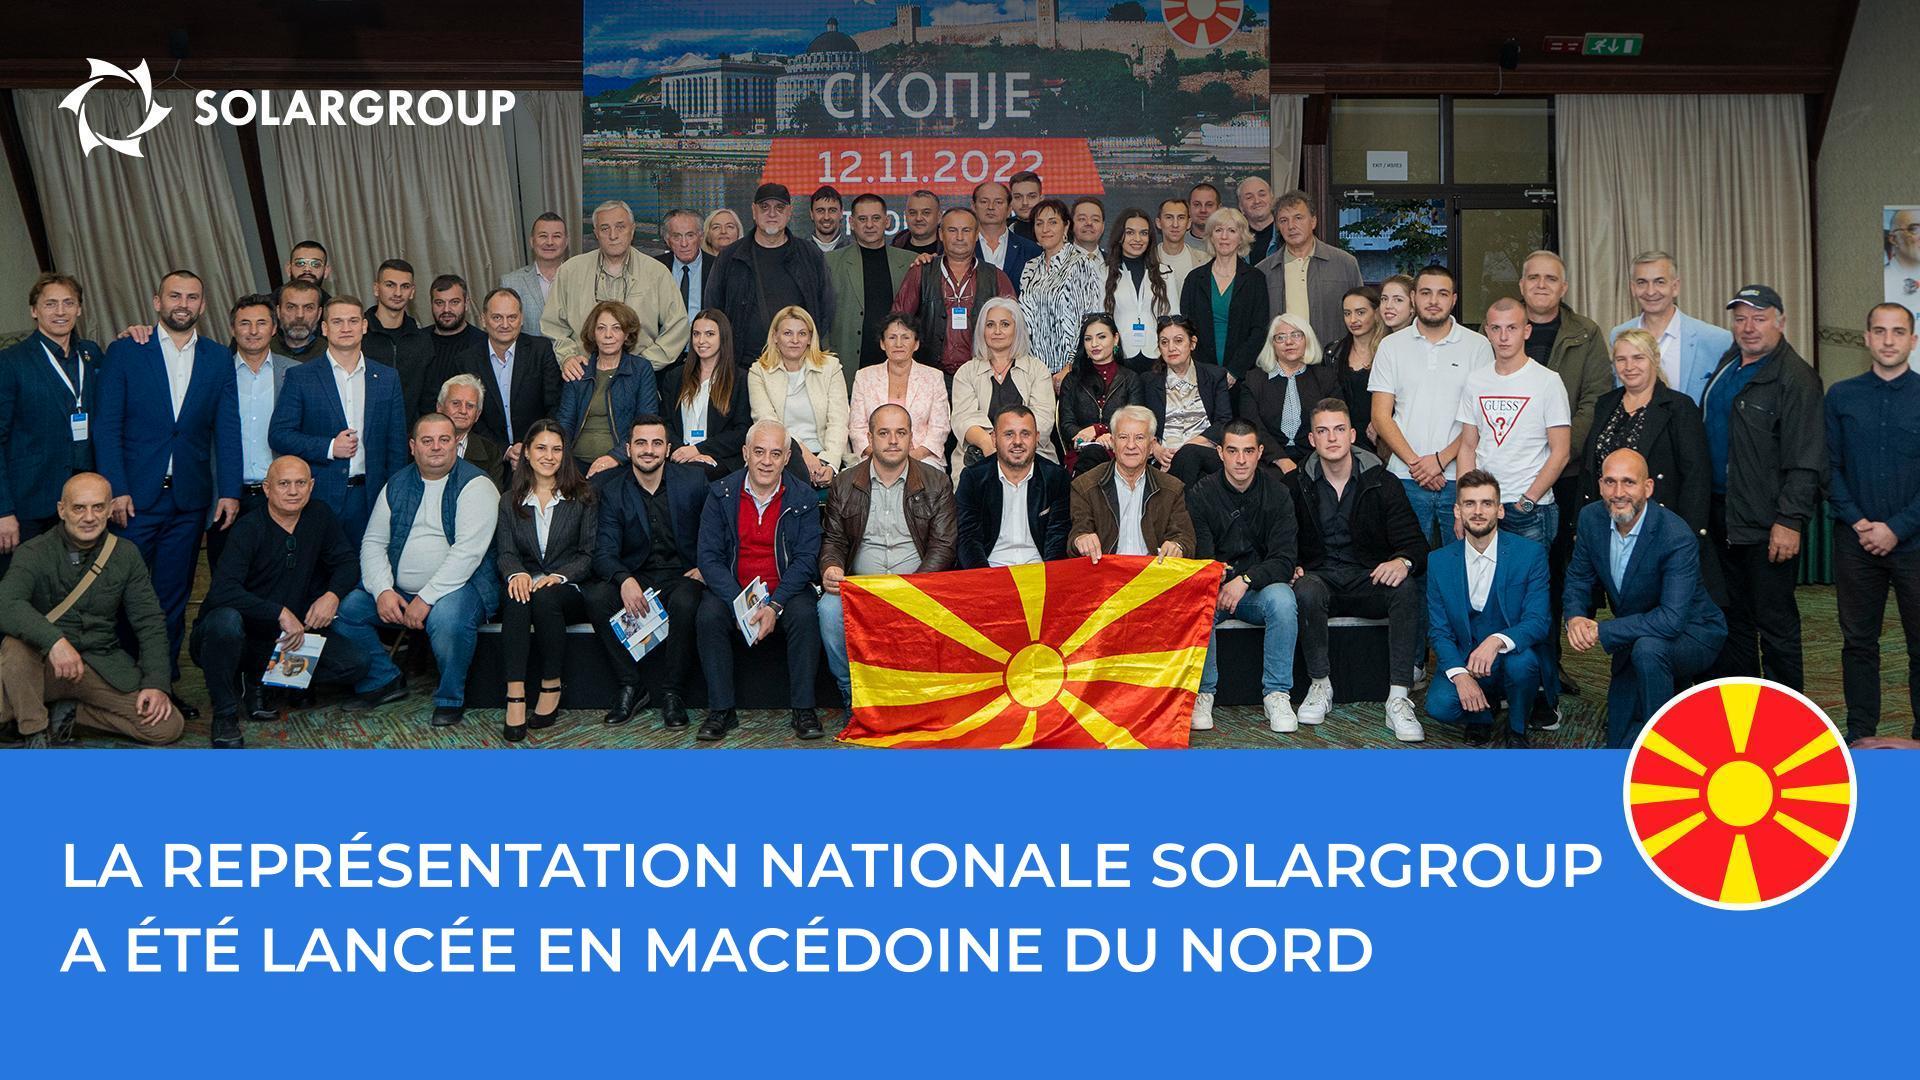 Conférence SOLARGROUP en Macédoine du Nord : les meilleurs moments